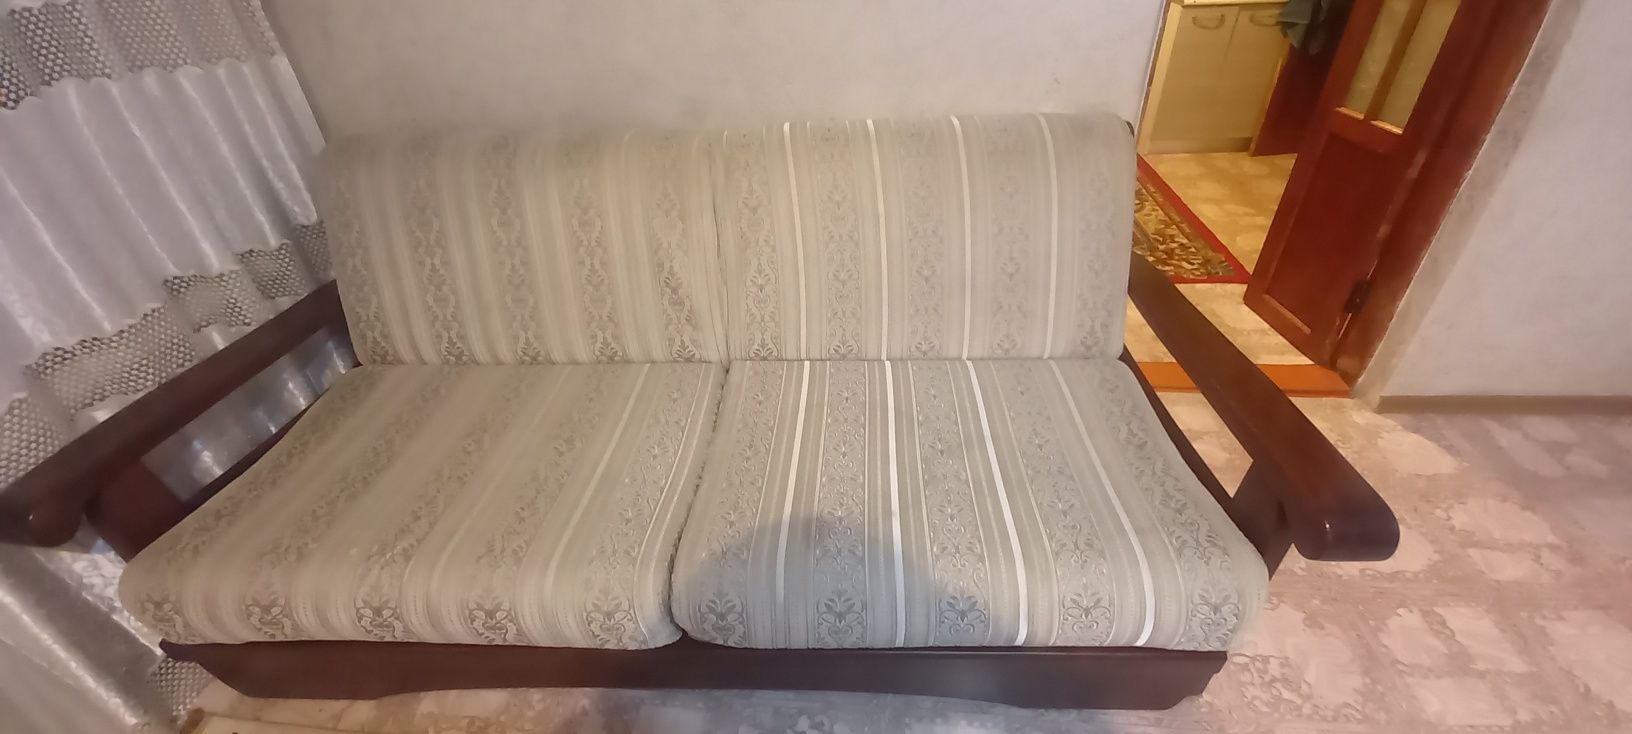 Продаётся диван-кровать